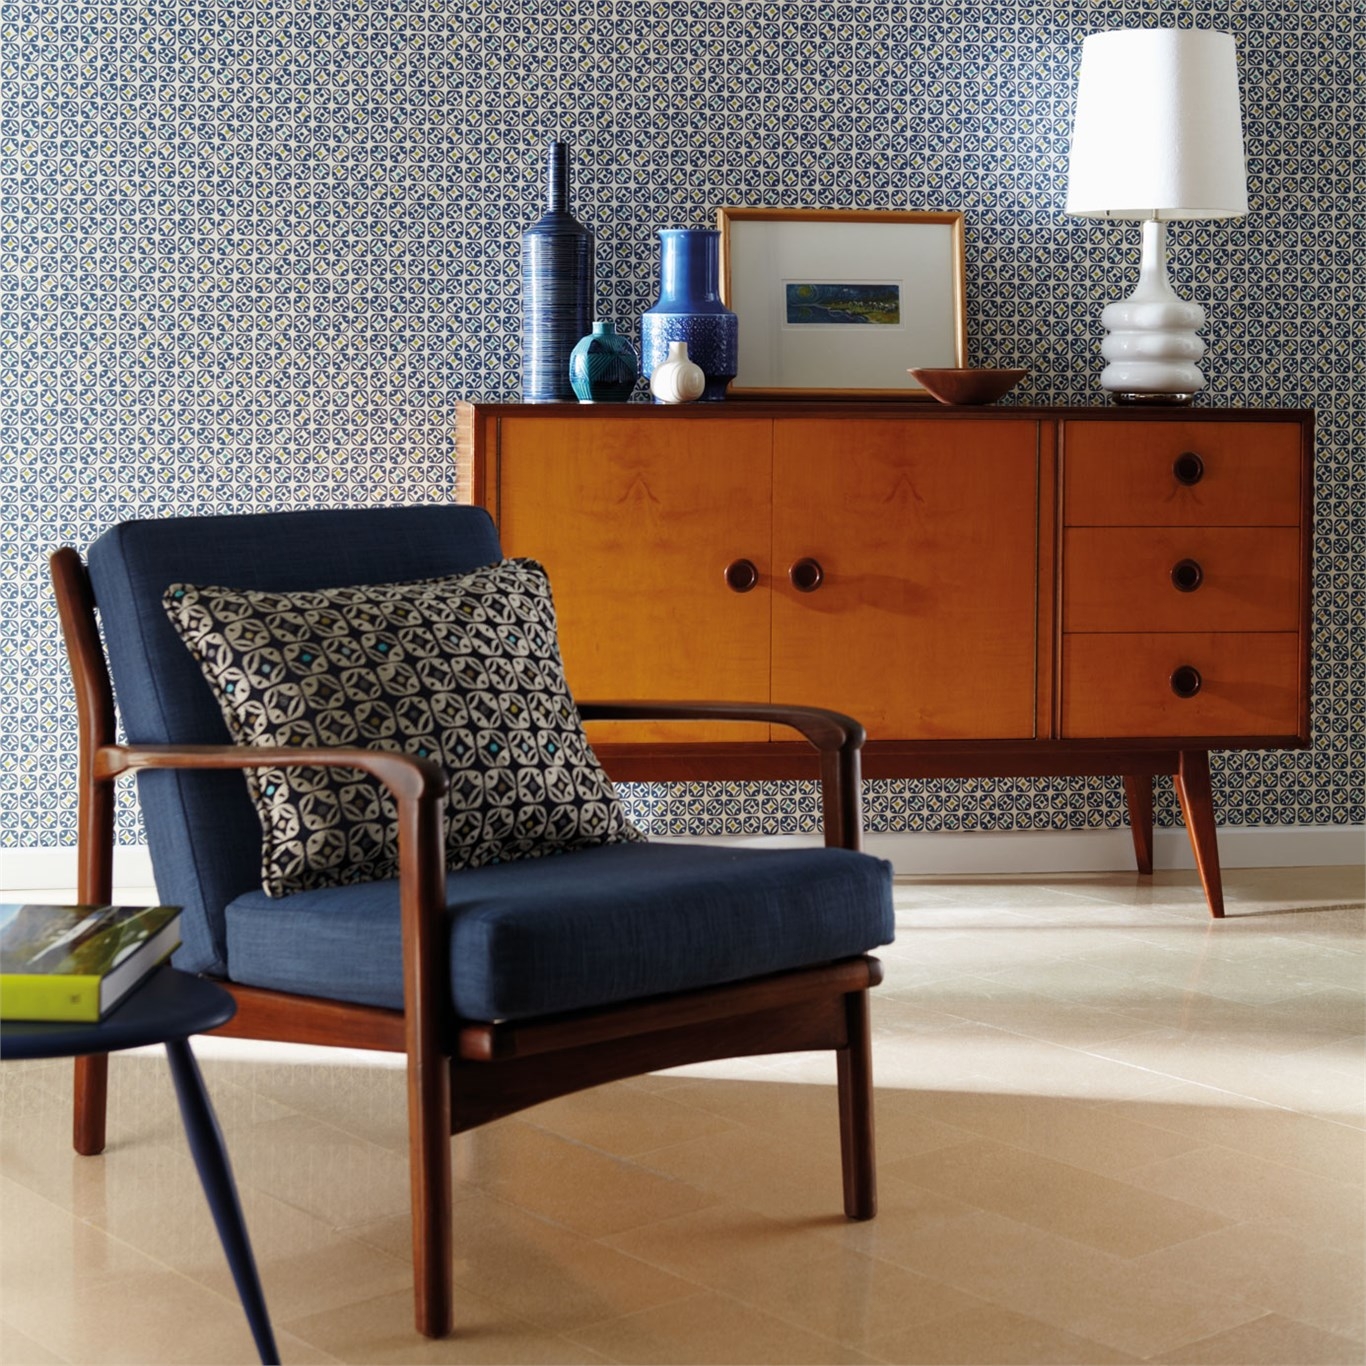 Indoor Teak Furniture In Contemporary Interior Design